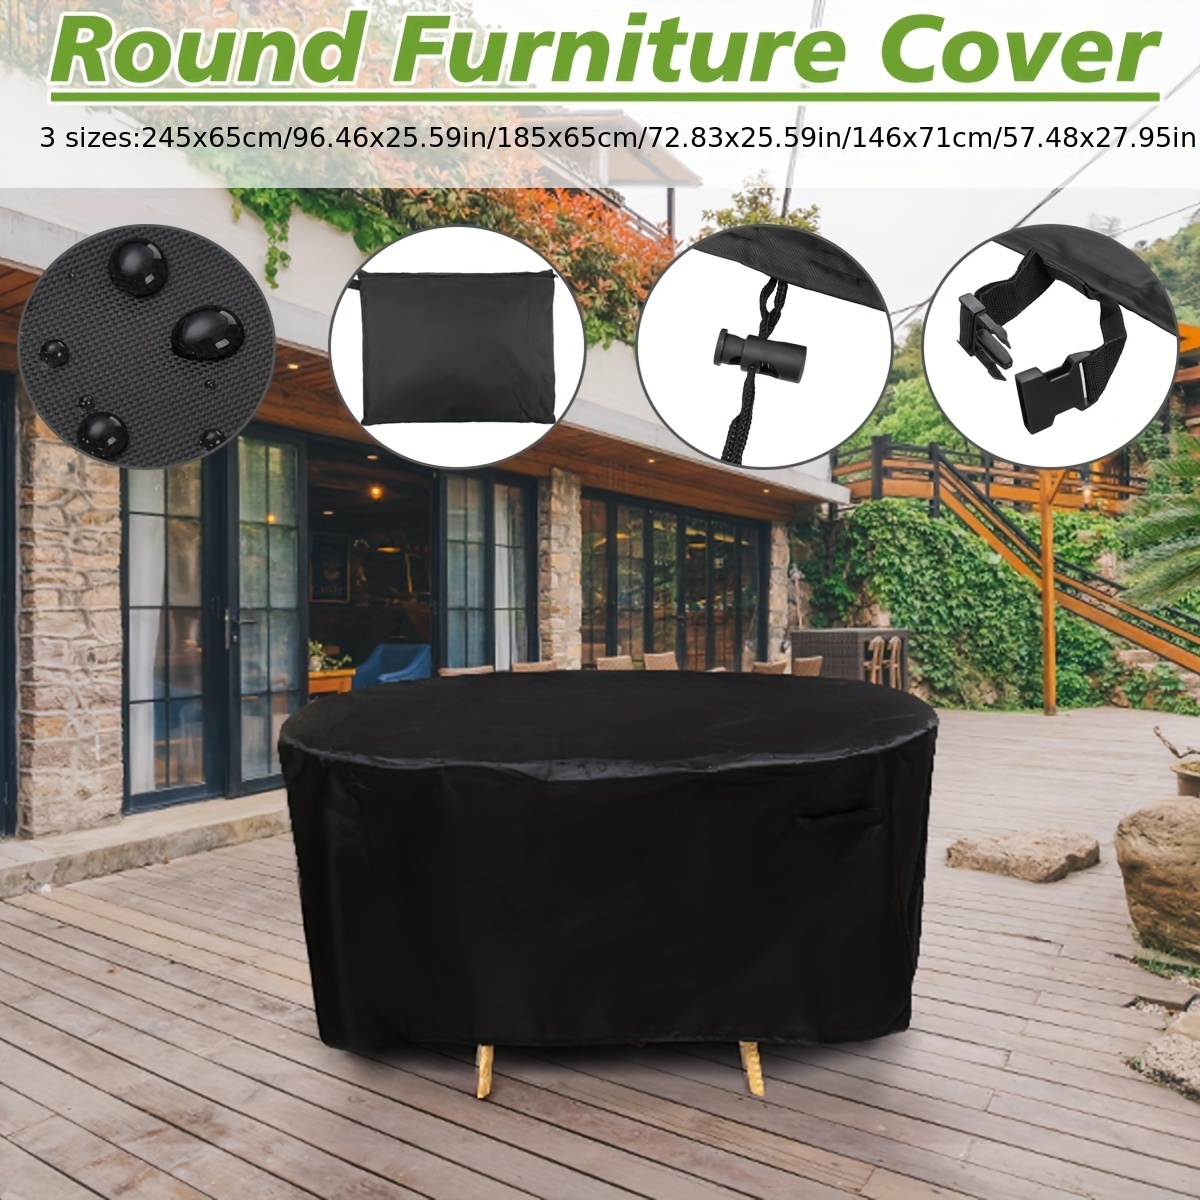  Funda redonda para mesa exterior de 62 pulgadas de diámetro x  28 pulgadas de alto, impermeable, resistente a los rayos UV, para muebles  de patio, cubierta de muebles de exterior de